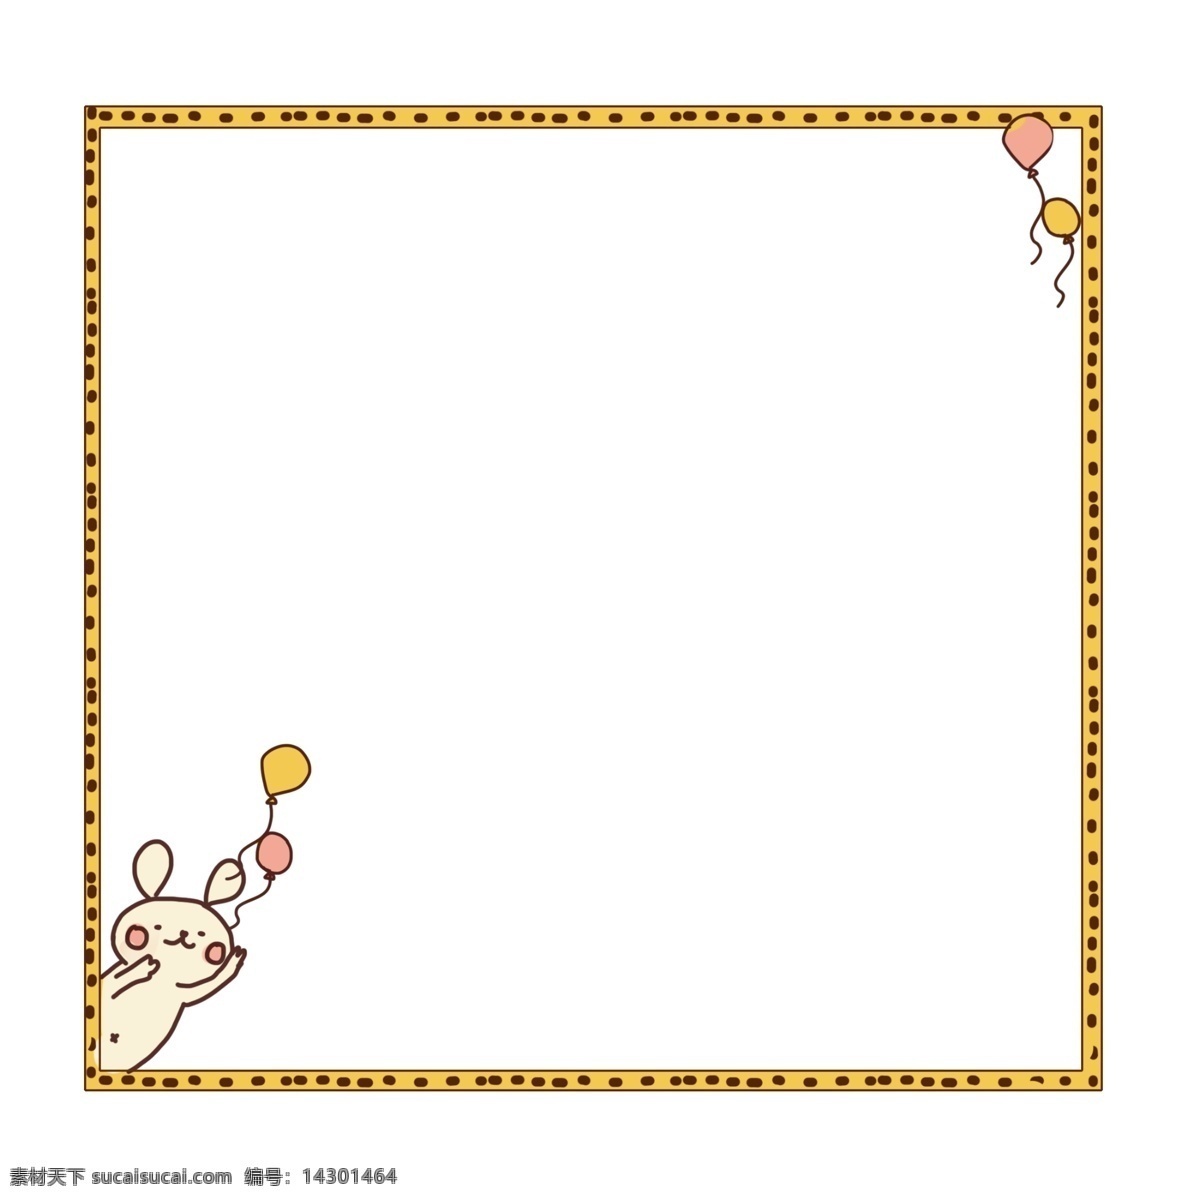 小 兔子 气球 边框 小兔子边框 黄色的边框 气球边框 边框装饰 边框插画 立体边框 可爱的边框